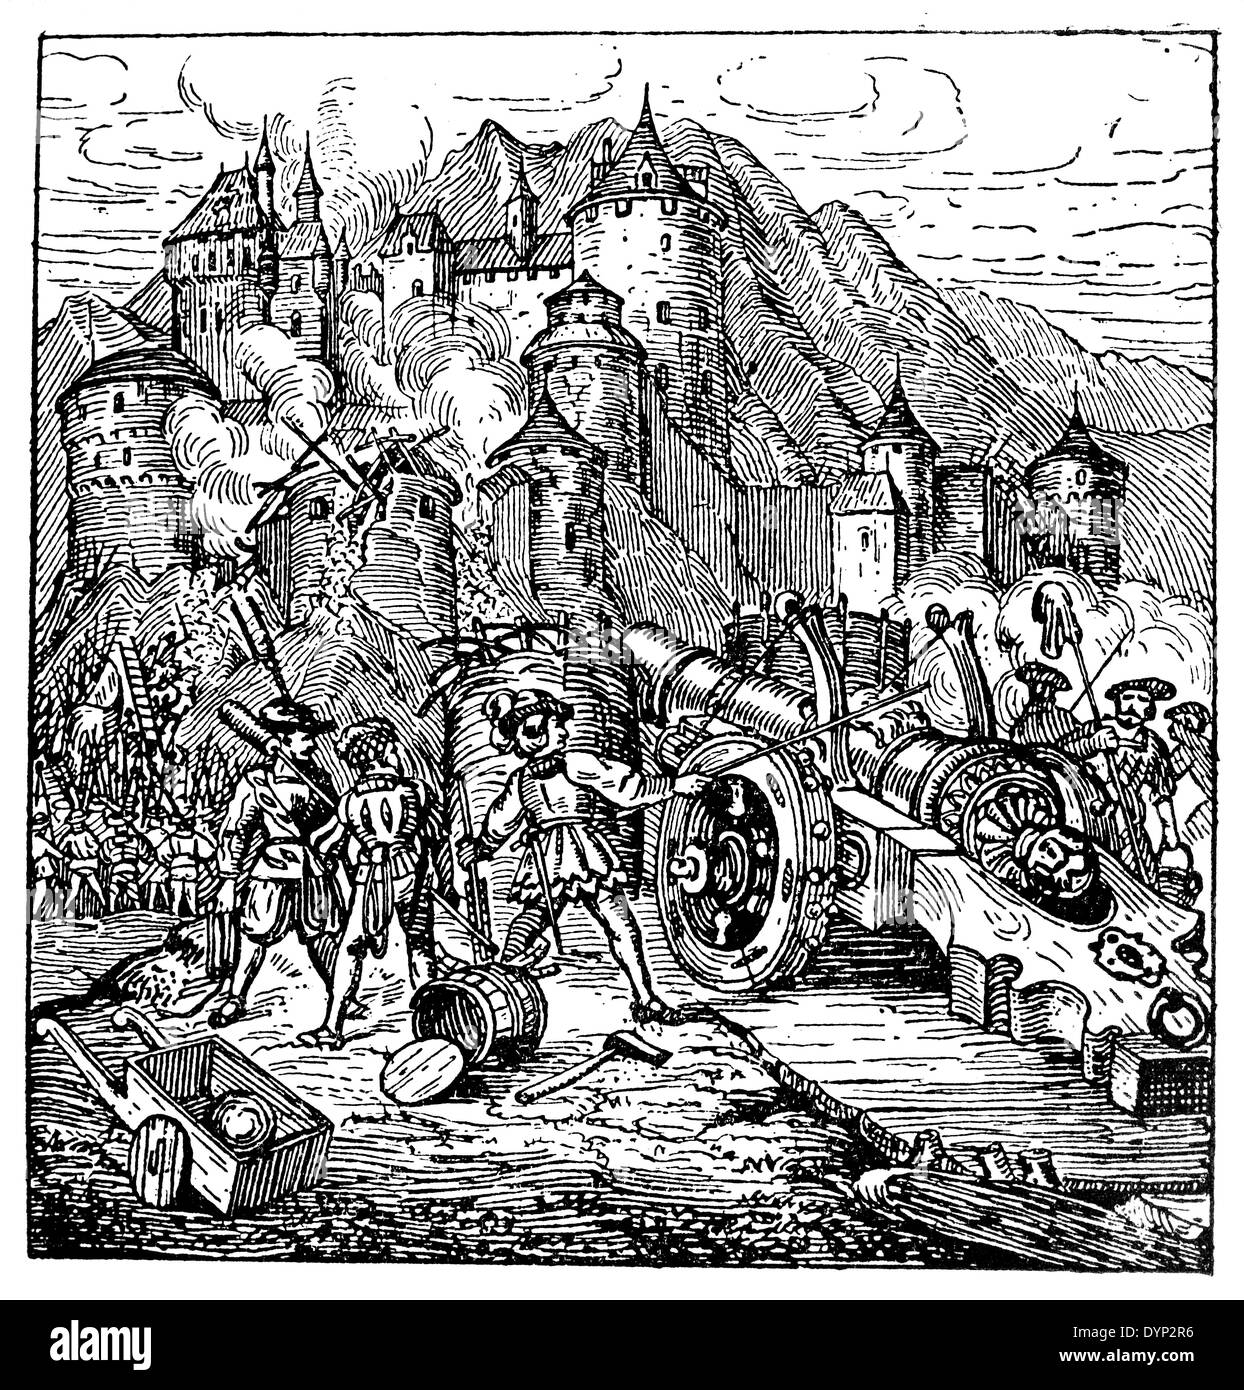 Siège de l'artillerie médiévale, château, illustration de l'Encyclopédie Soviétique, 1926 Banque D'Images